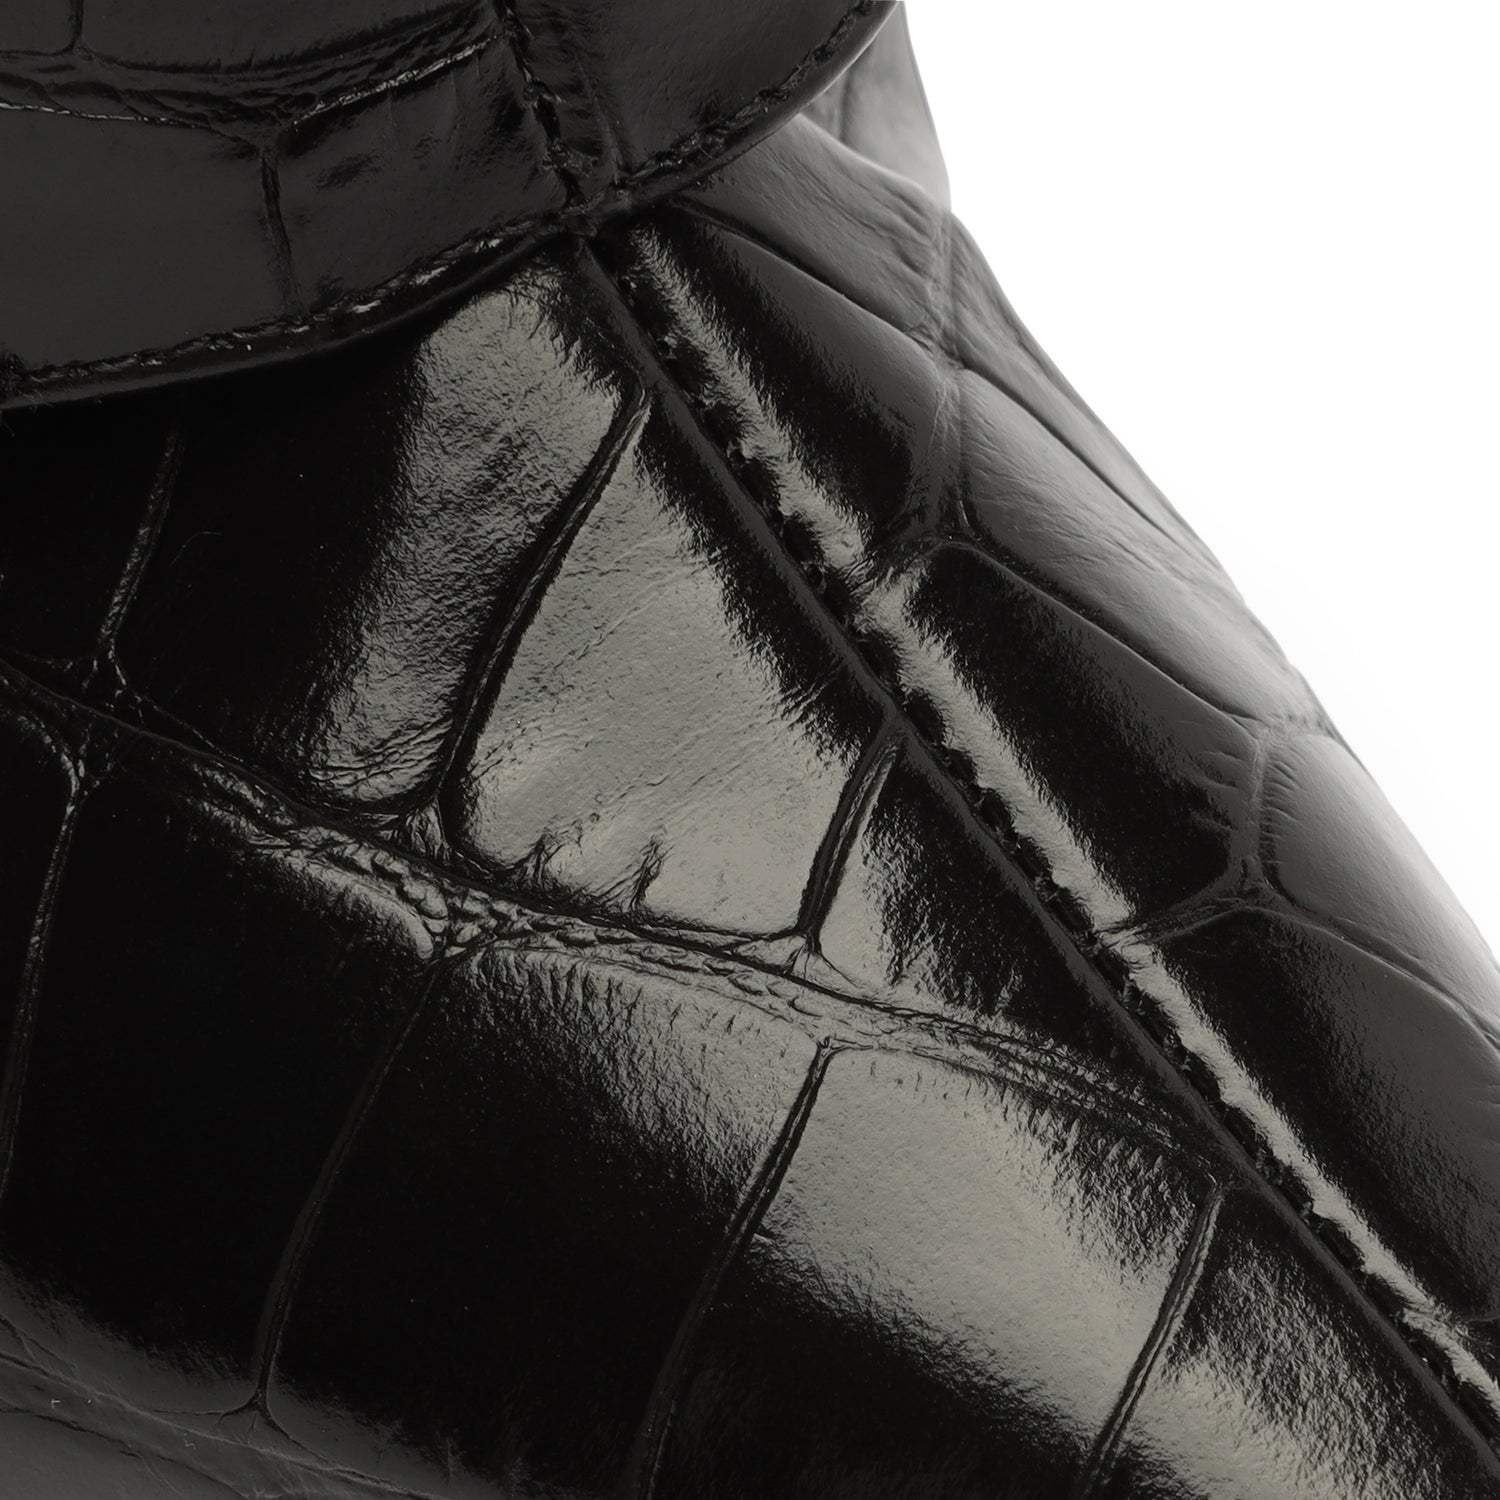 Jorian Crocodile-Embossed Leather Bootie Booties OLD    - Schutz Shoes